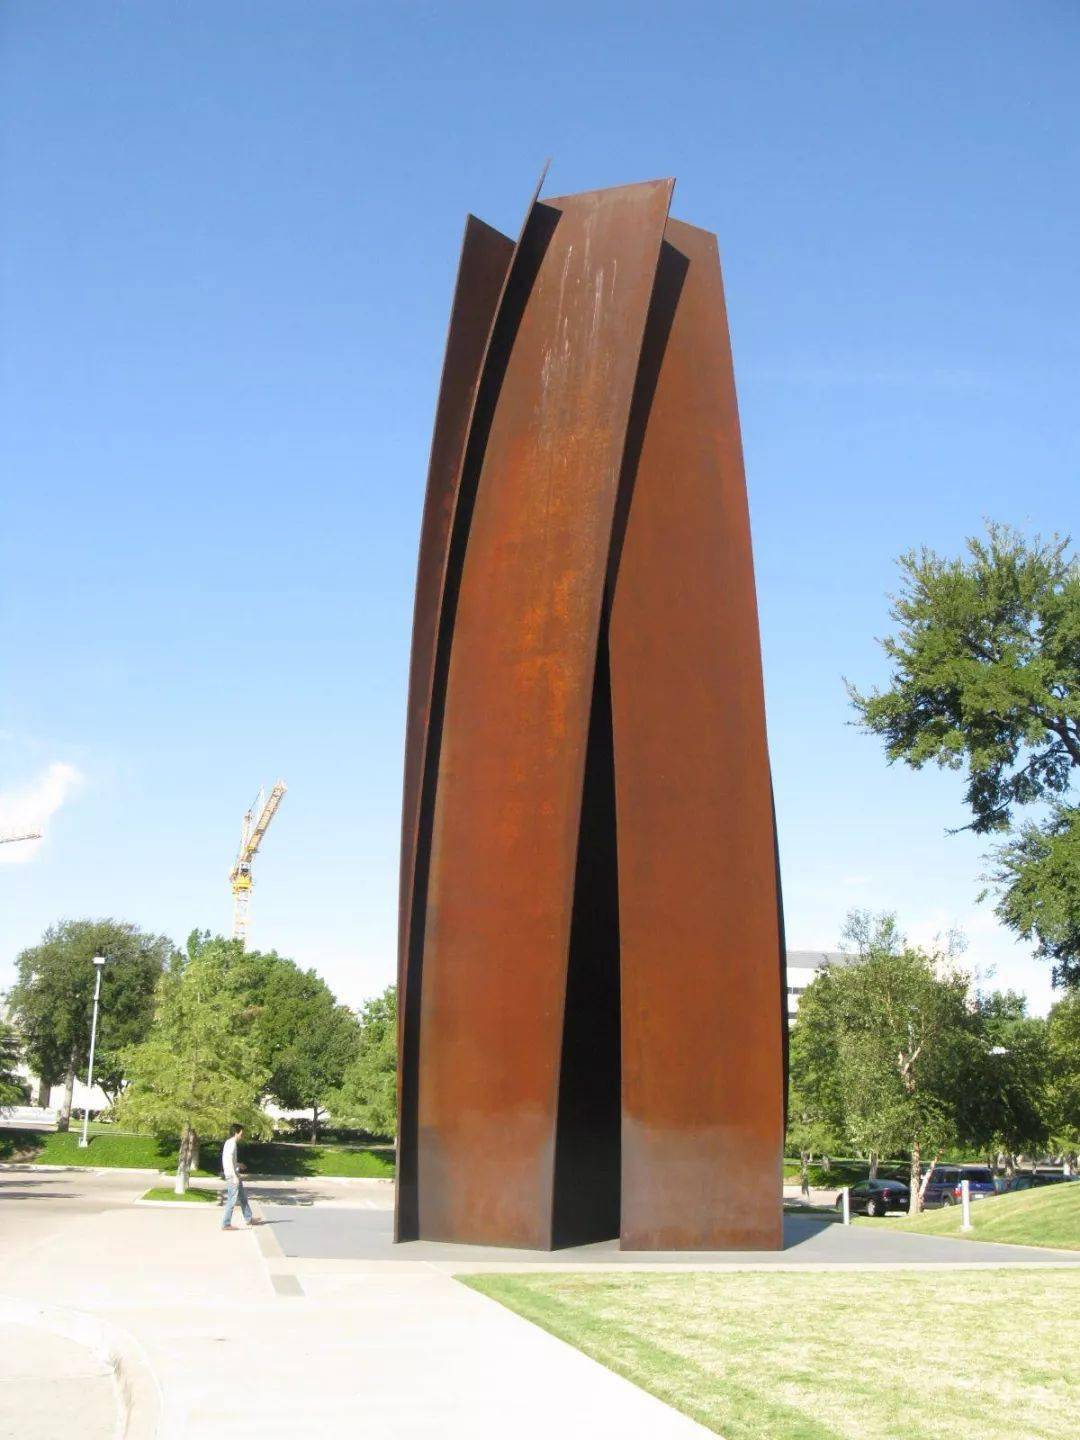 这件被拆掉的作品的名字叫《倾斜的弧》,作者是美国著名雕塑家理查德